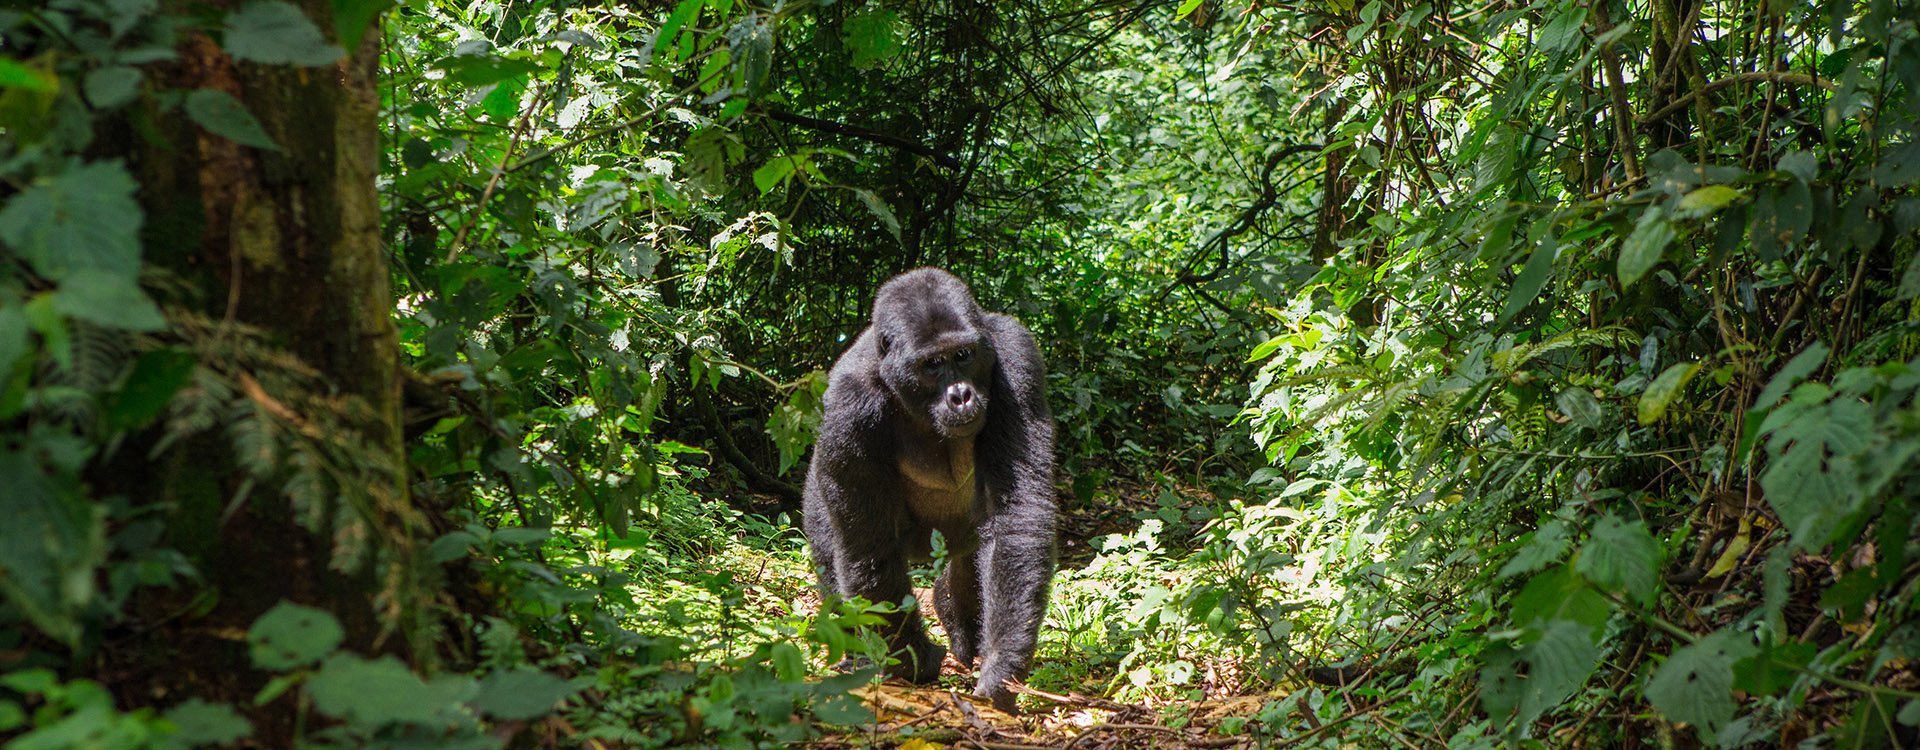 Gorilla walking through forest